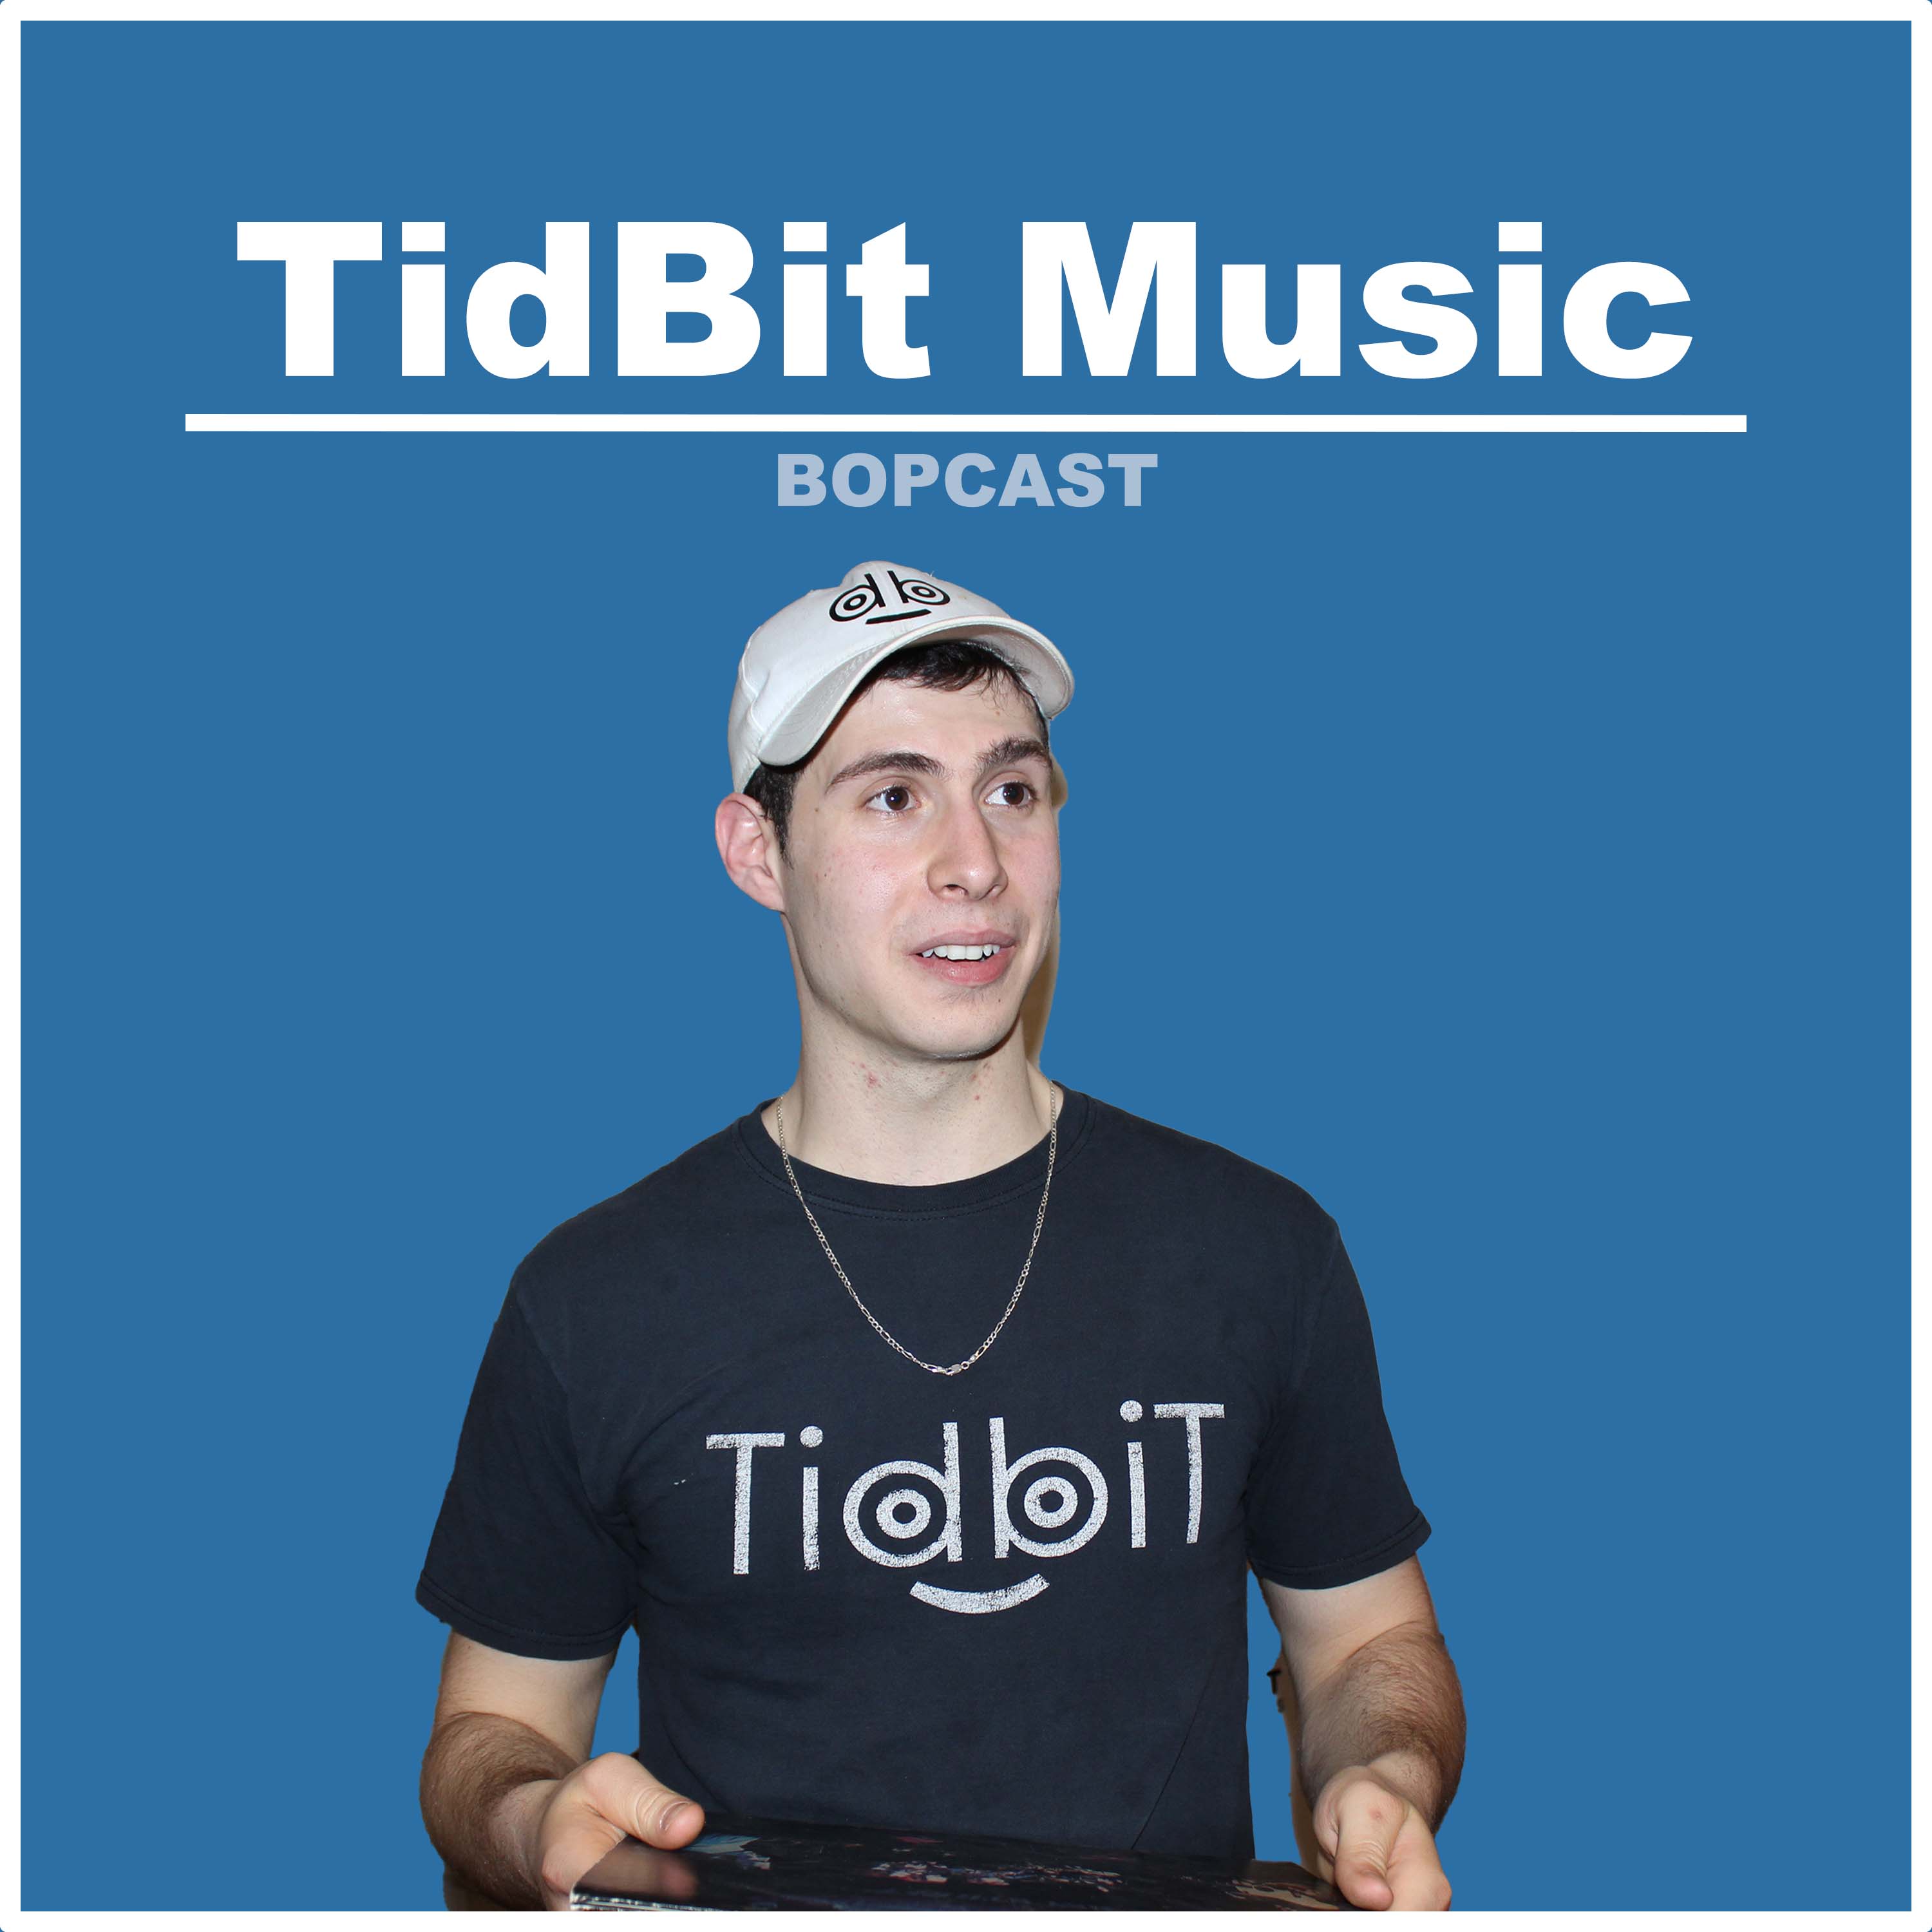 TidBit Music - DJing at 12, Rehab at 20, Singing at 23 and a Live Performance